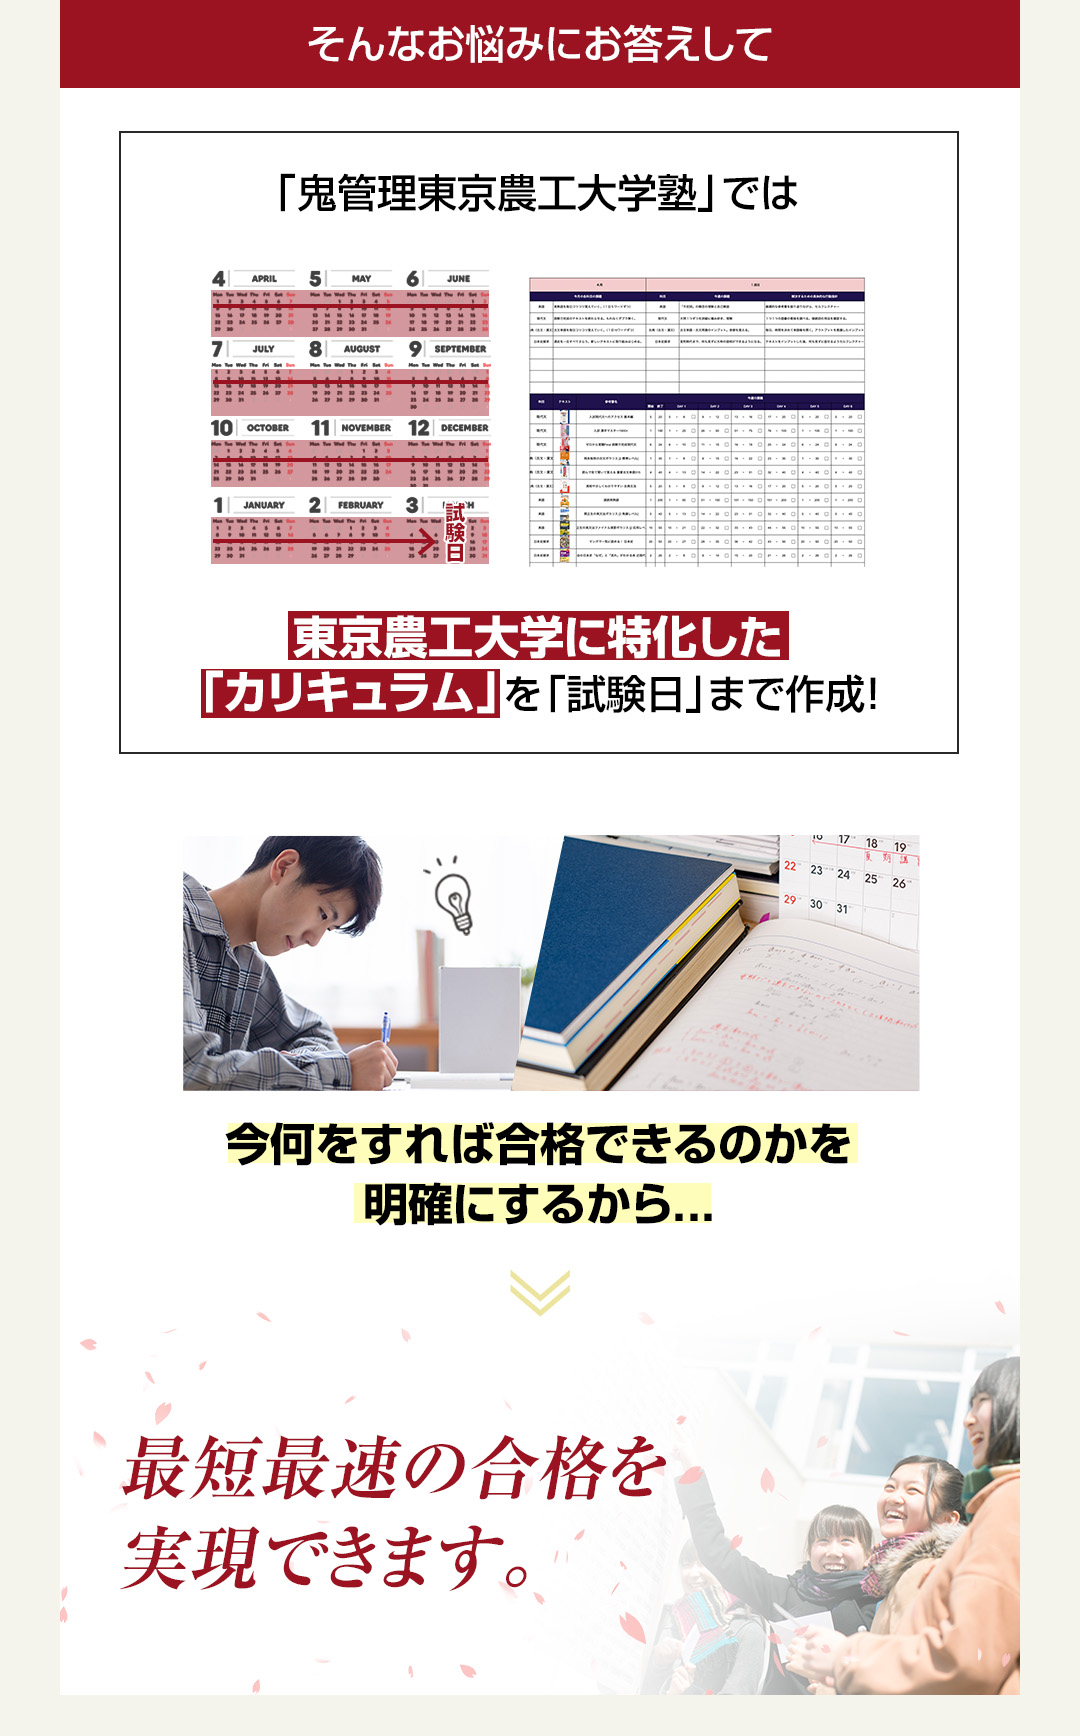 「鬼管理東京農工大学塾」では東京農工大学に特化した「カリキュラム」を「試験日」まで作成